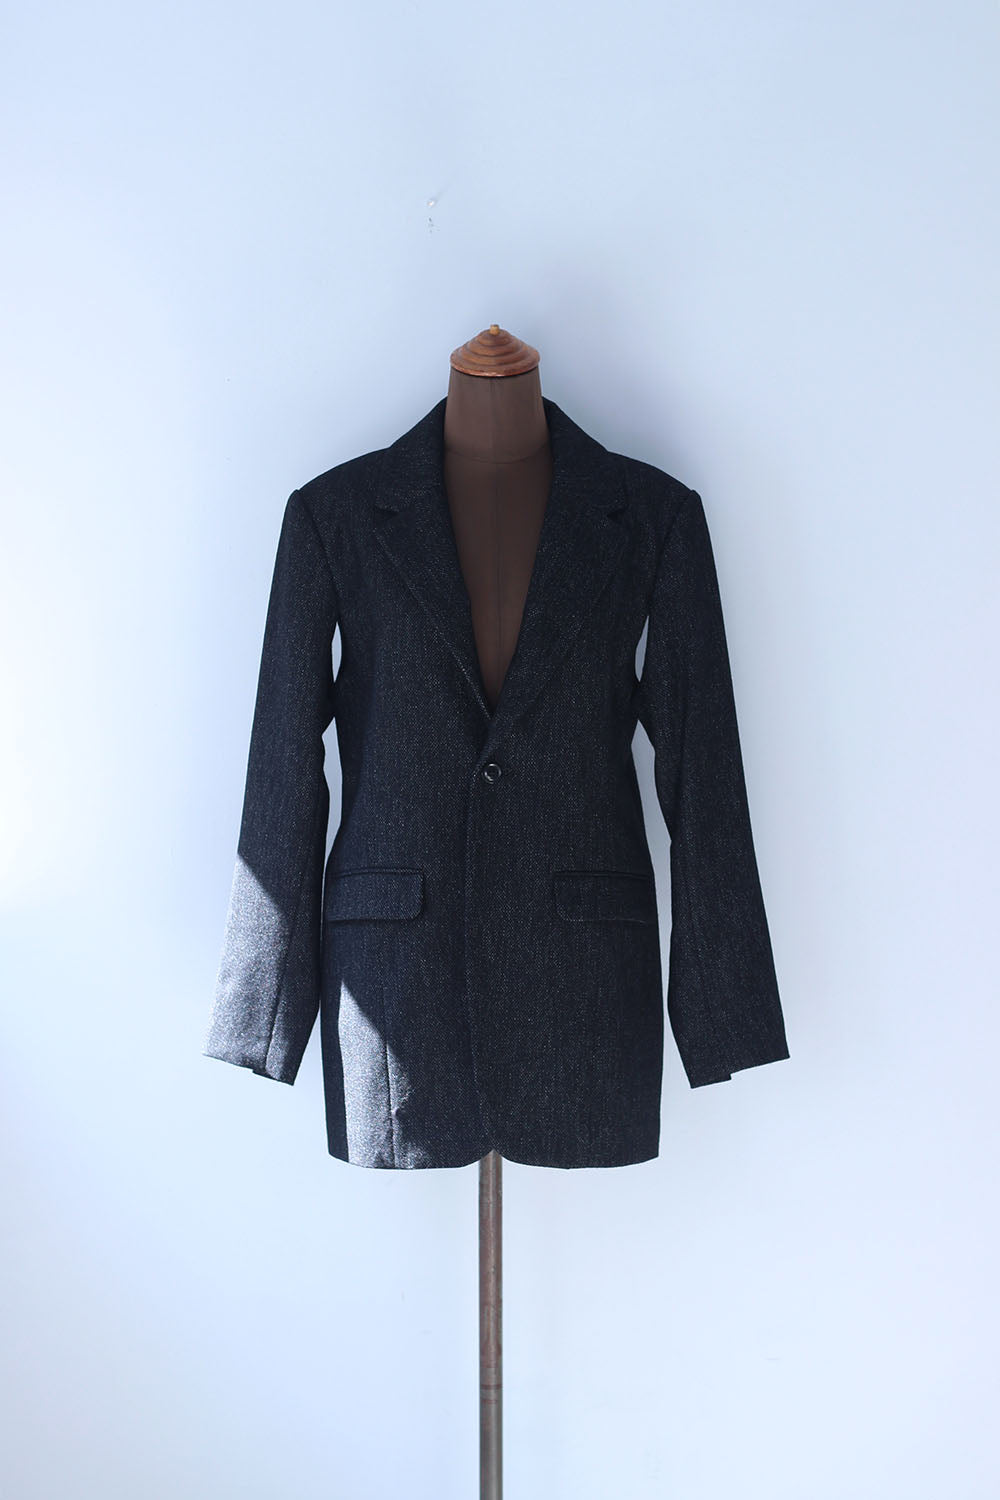 DOMENICO+SAVIO "tweed arrange sleeve jacket" (black)